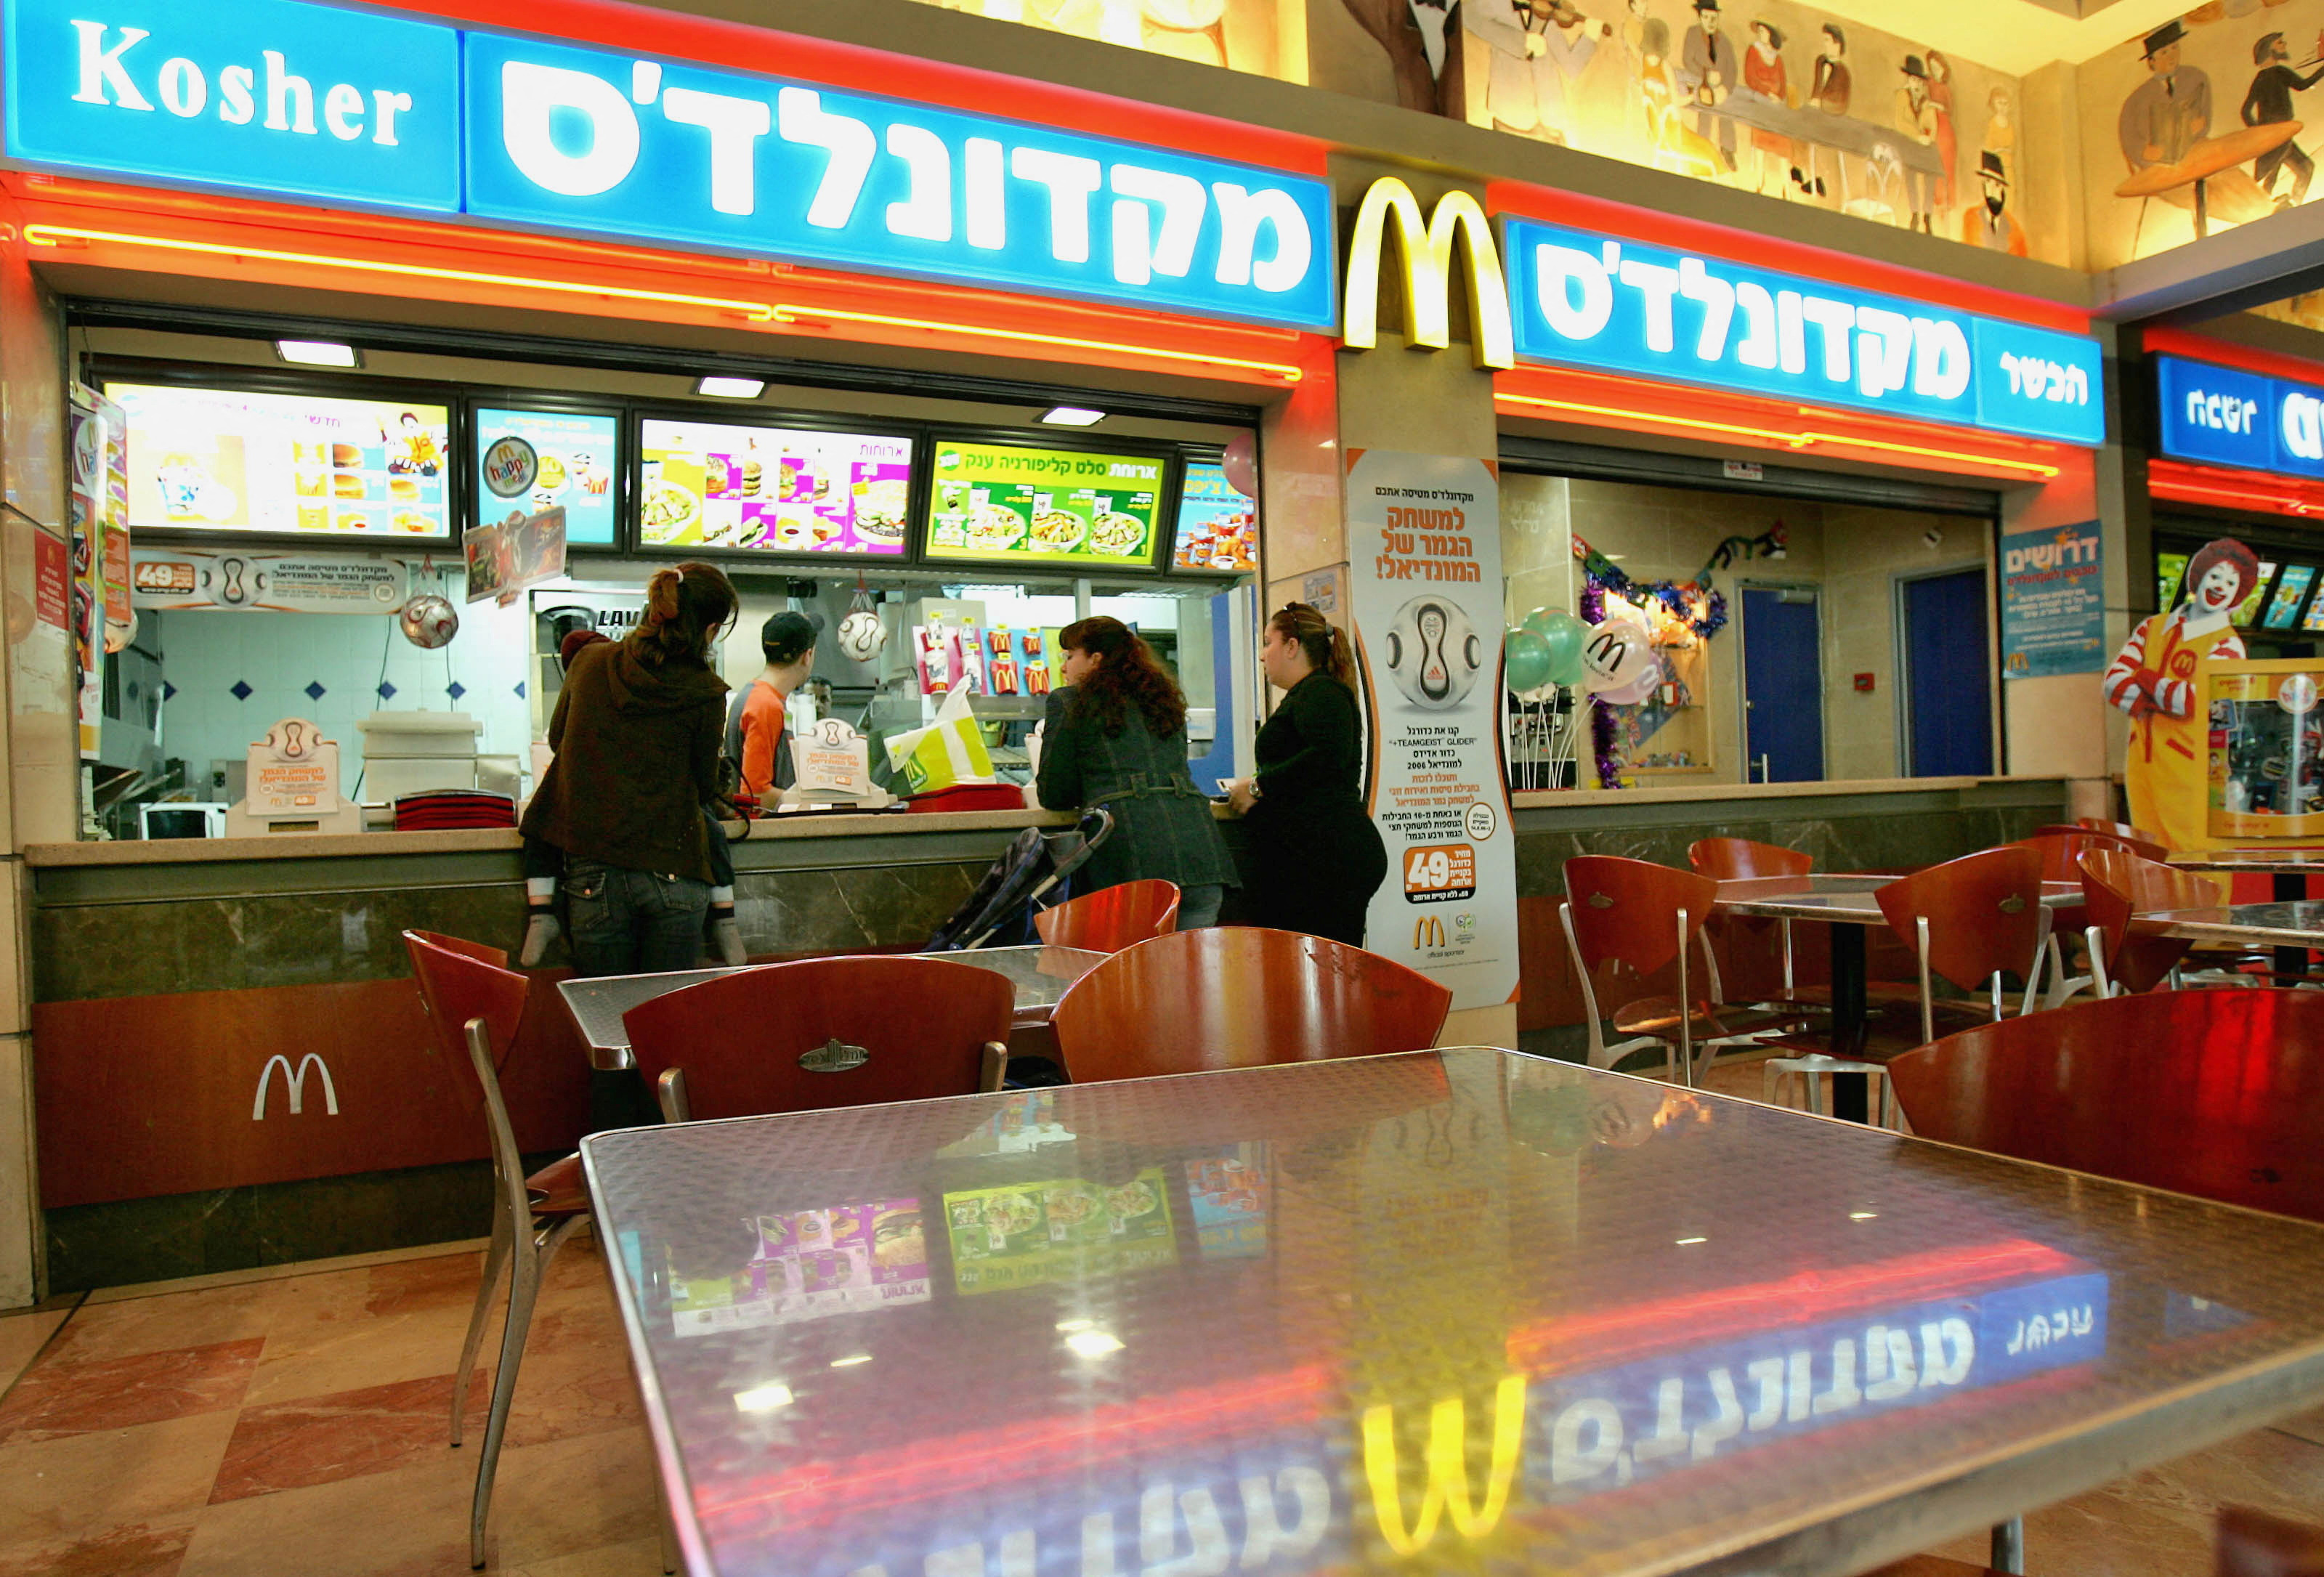 Israeli customers at a McDonald's restaurant in Tel Aviv